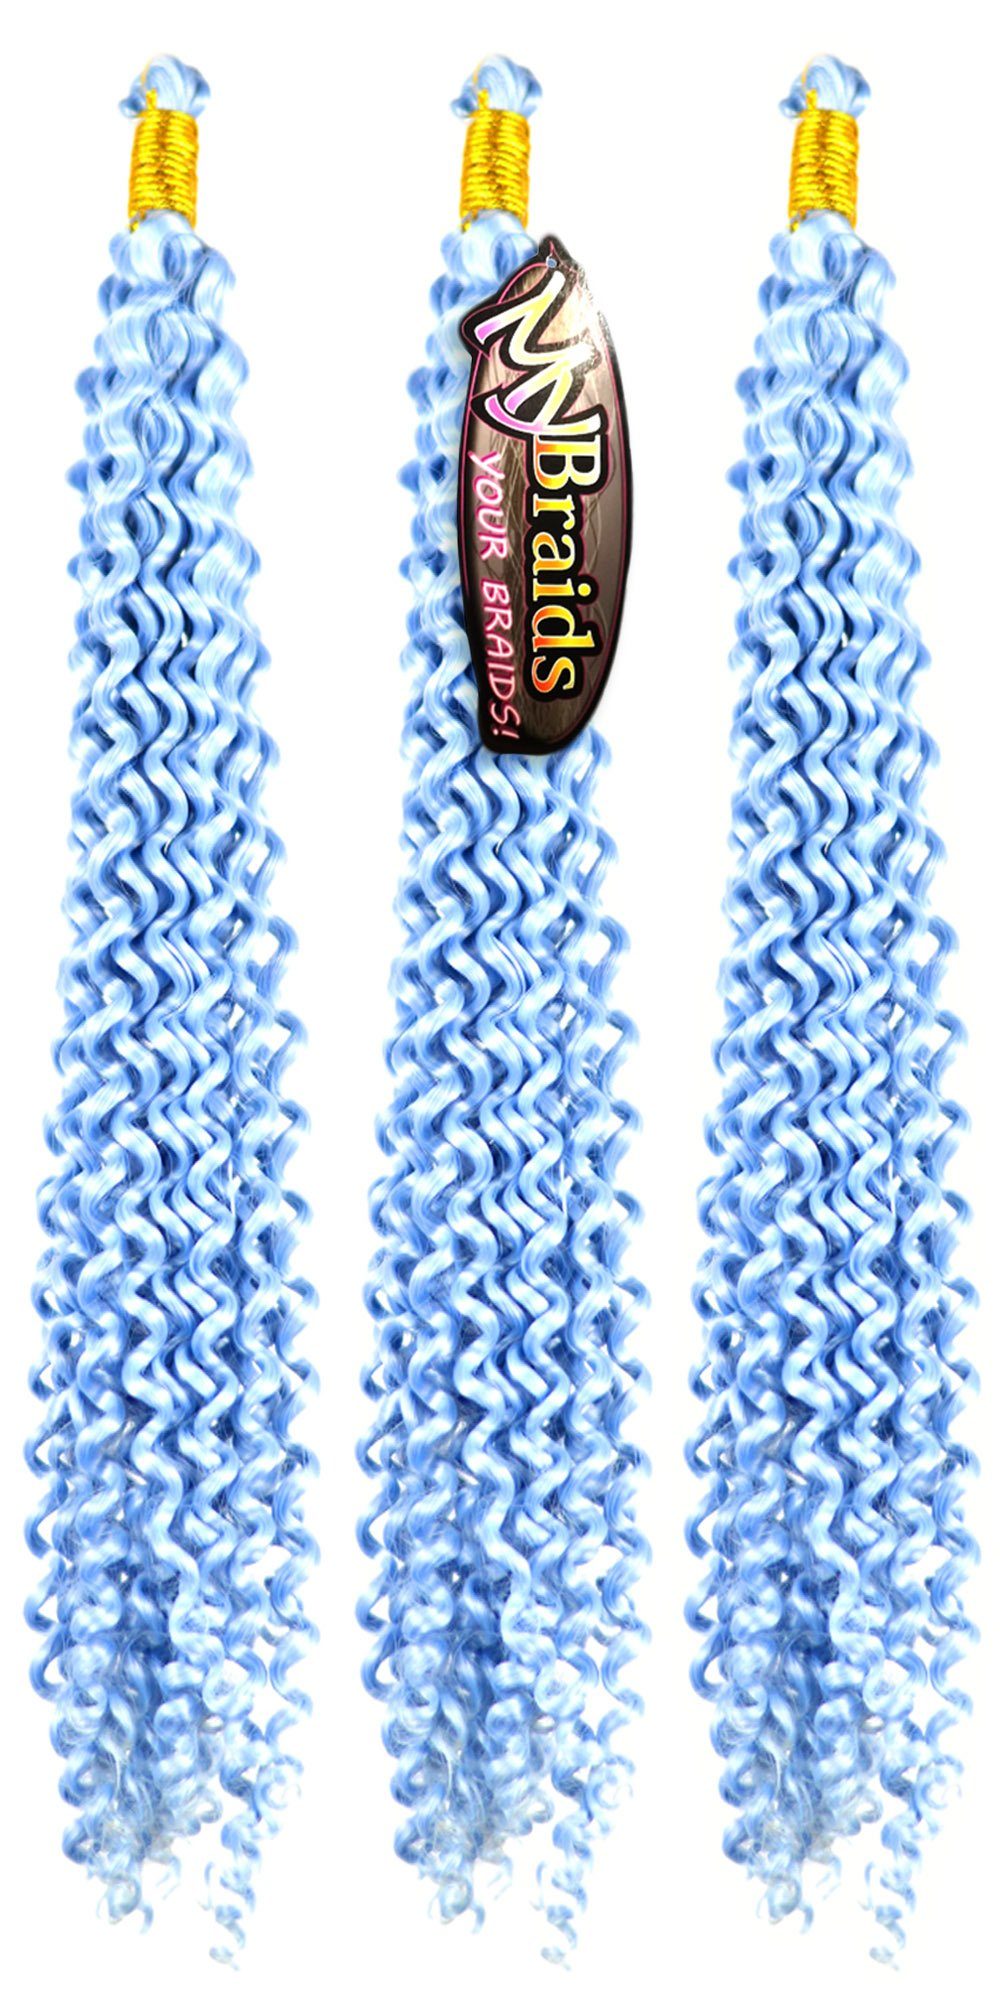 MyBraids YOUR BRAIDS! Kunsthaar-Extension Deep Wave Crochet Braids 3er Pack Flechthaar Zöpfe Wellig 17-W Silberblau